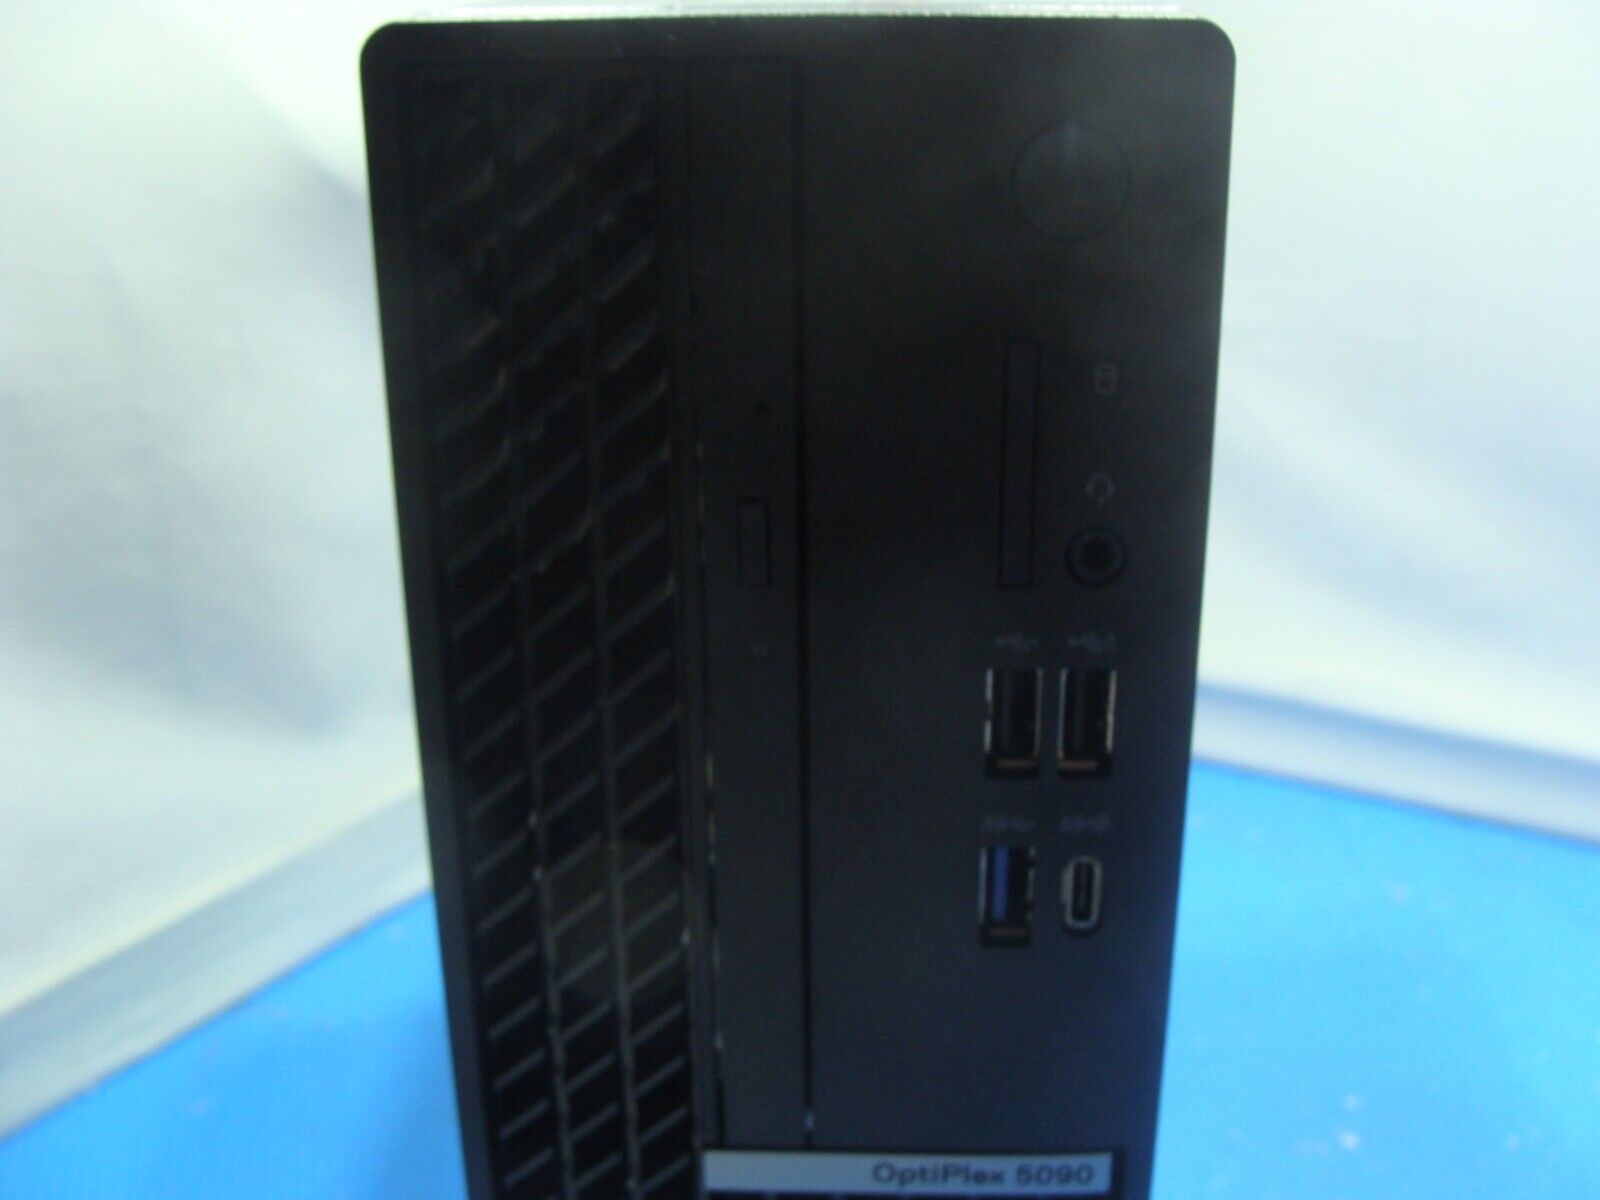 Warranty Dell OptiPlex 5090 SFF Core i7 10700 2.90GHz 8 GB Ram  256GB SSD Win10P